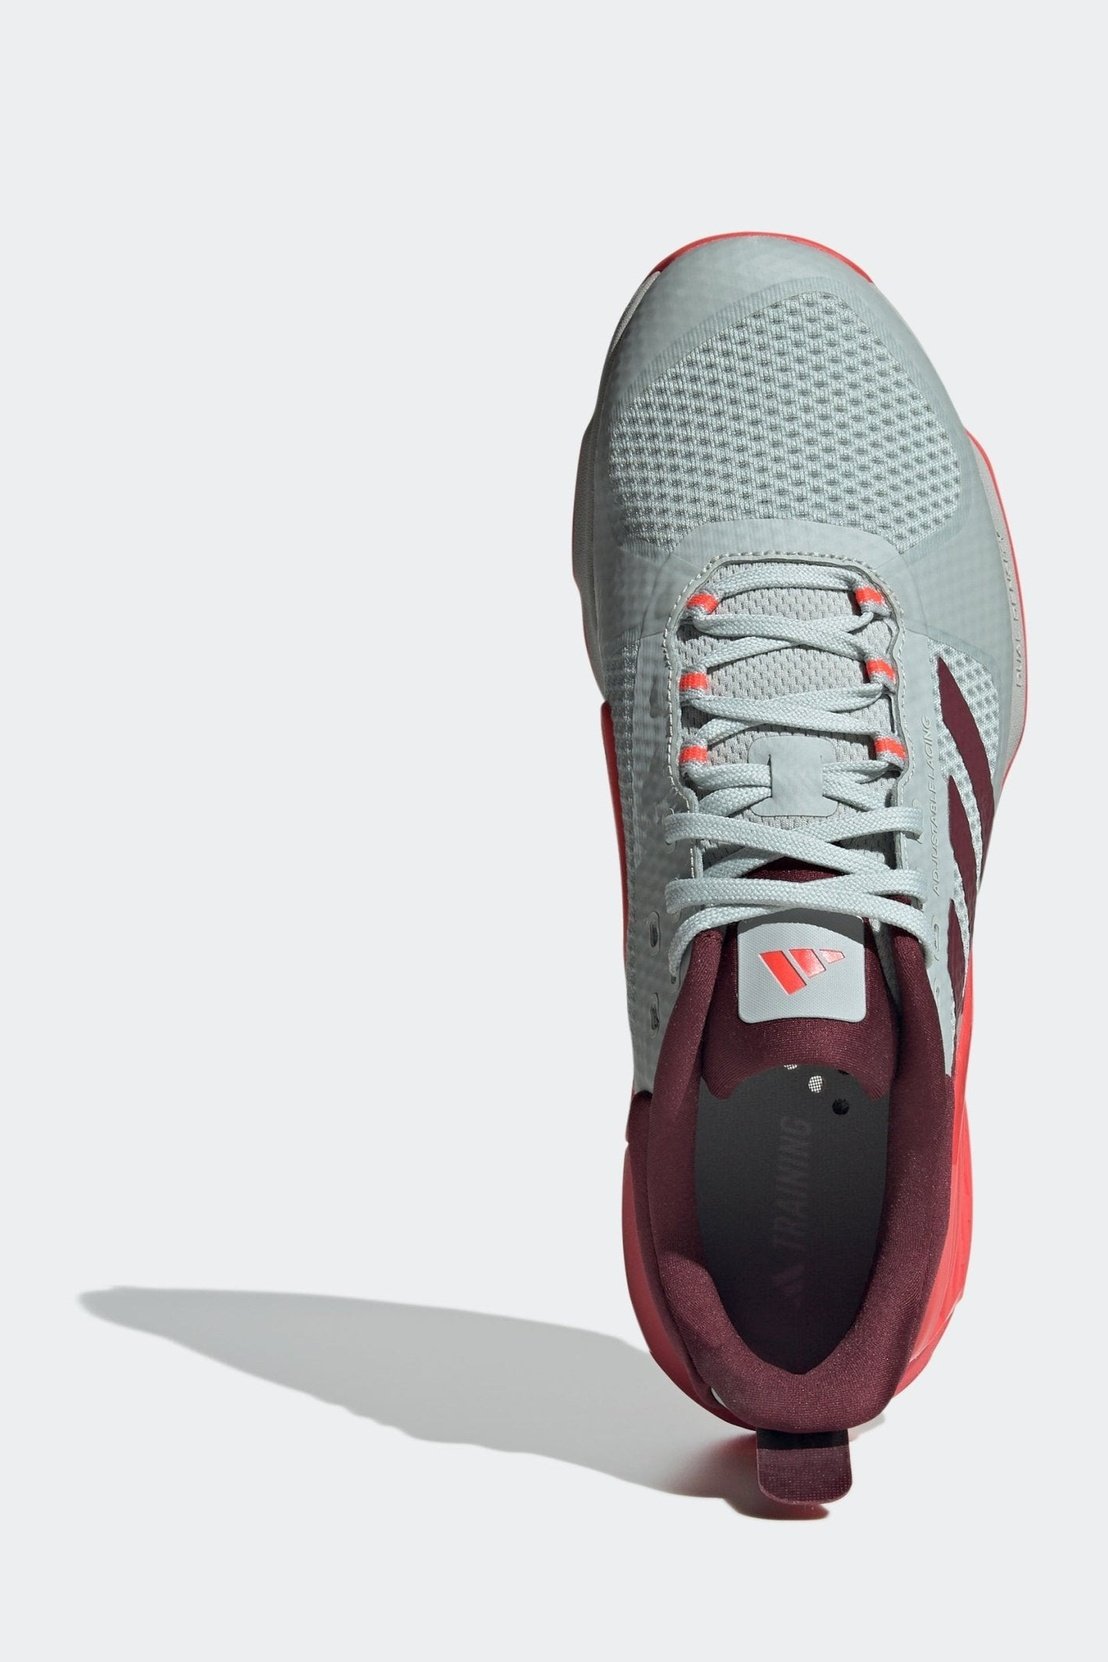 ADIDAS - נעלי ספורט לגברים DROPSET 2 בצבע אפור וכתום - MASHBIR//365